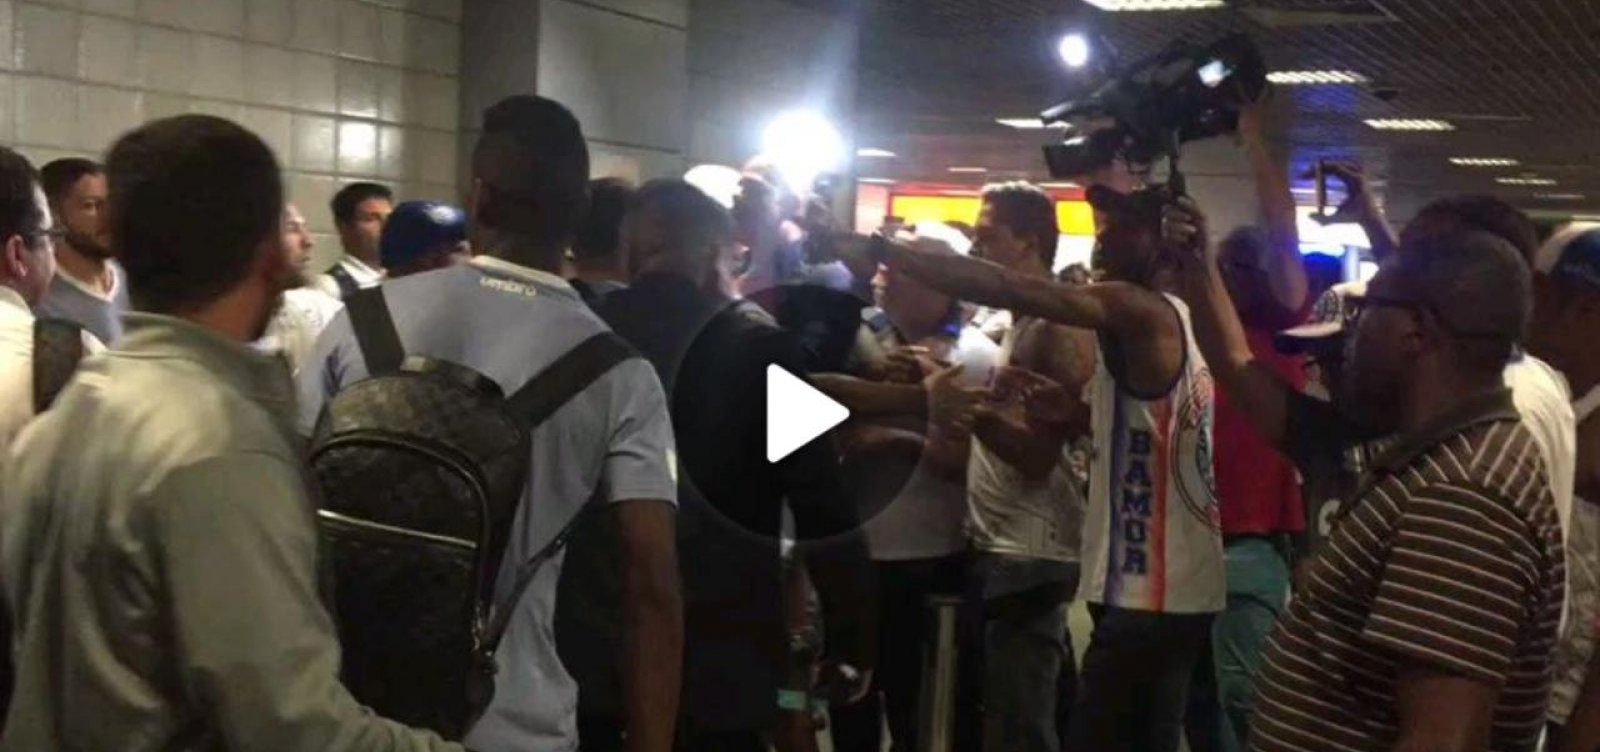 Jogadores do Bahia são agredidos por torcedores em aeroporto; veja vídeo